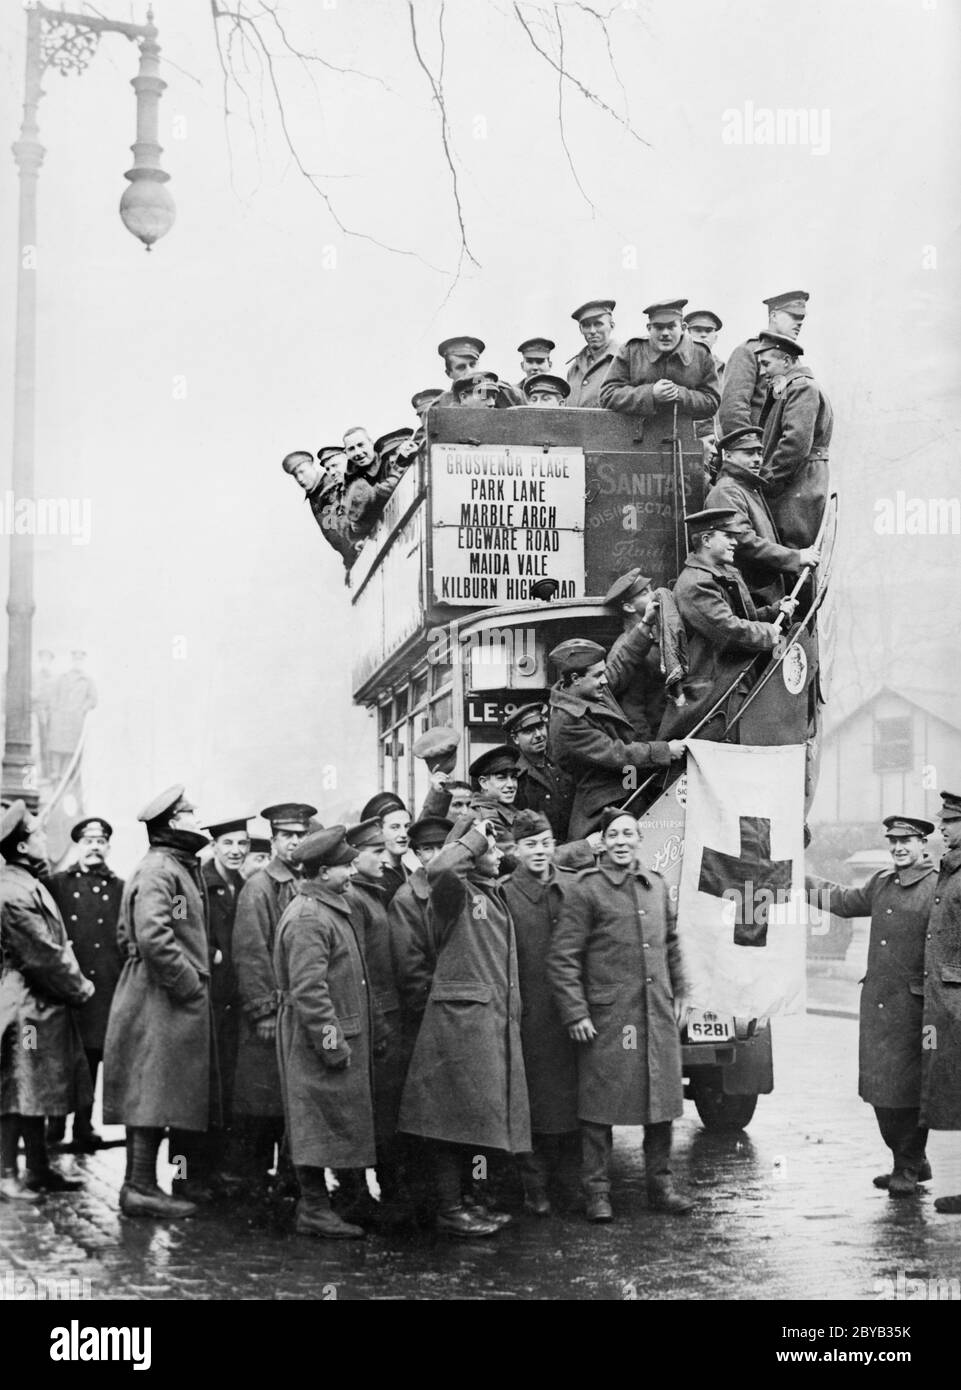 Grand groupe de soldats américains en congé de France visite guidée sur les jardins de Grosvenor de la Croix-Rouge, Londres, Angleterre, Royaume-Uni, American National Red Cross Collection, mars 1919 Banque D'Images